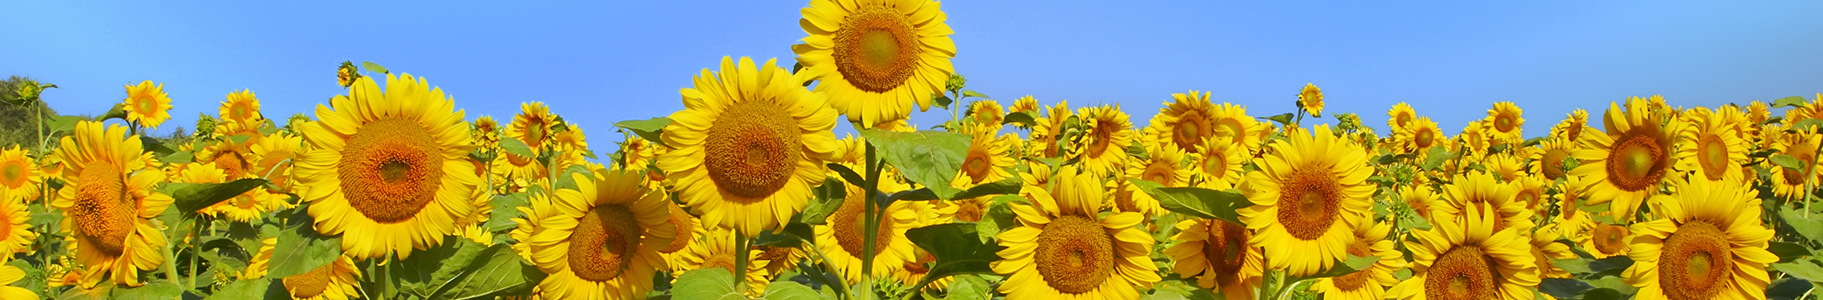 image of sunflowers